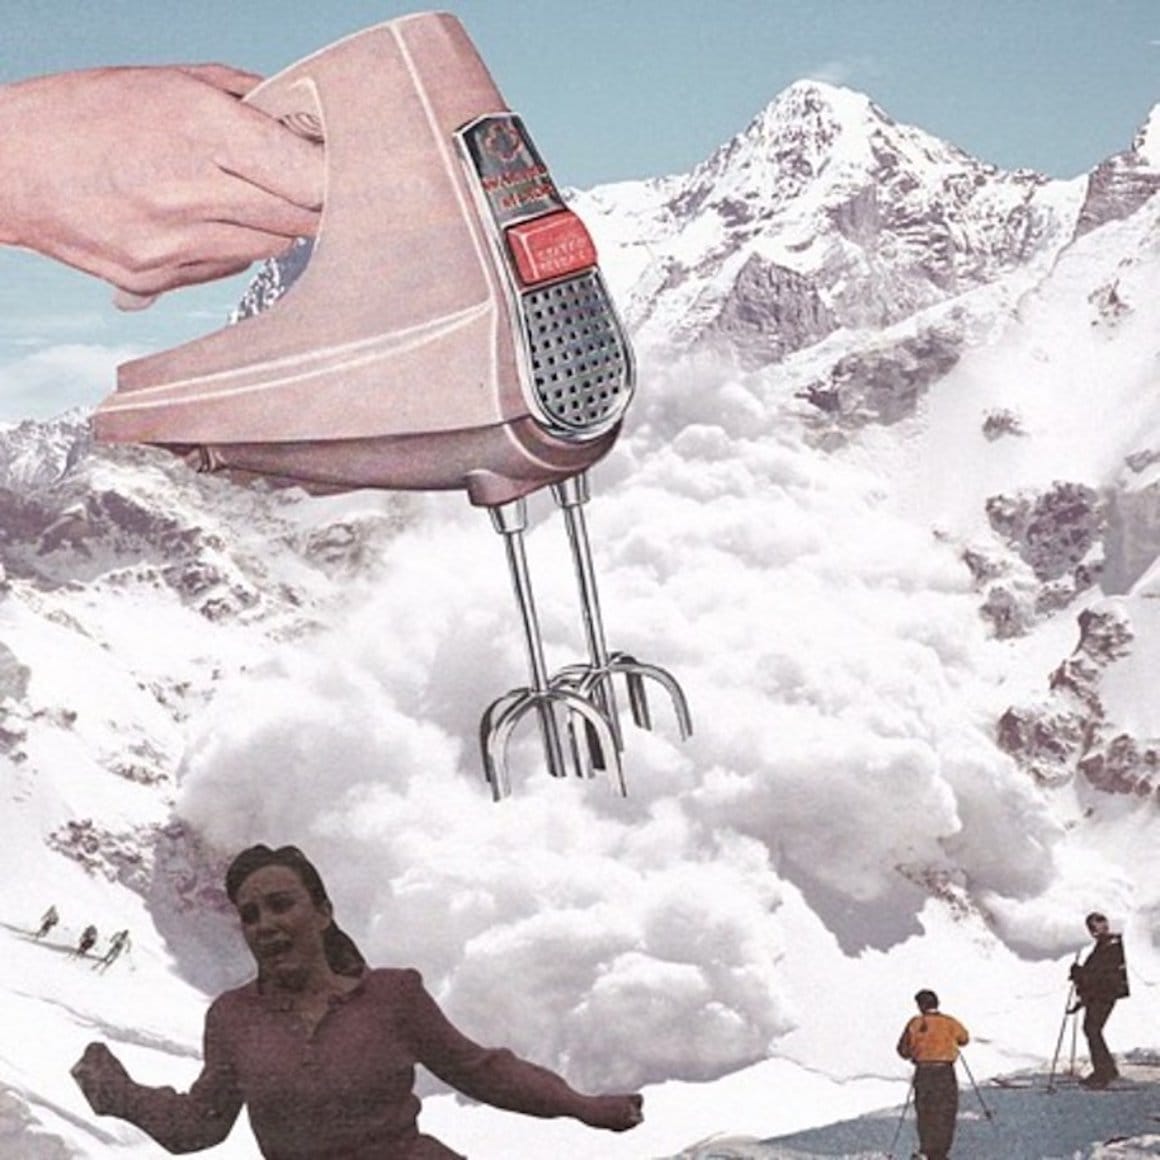 Un collage surréaliste de Mohanad Shuraideh représentant un batteur électrique battant de la neige au sommet d'une montagne